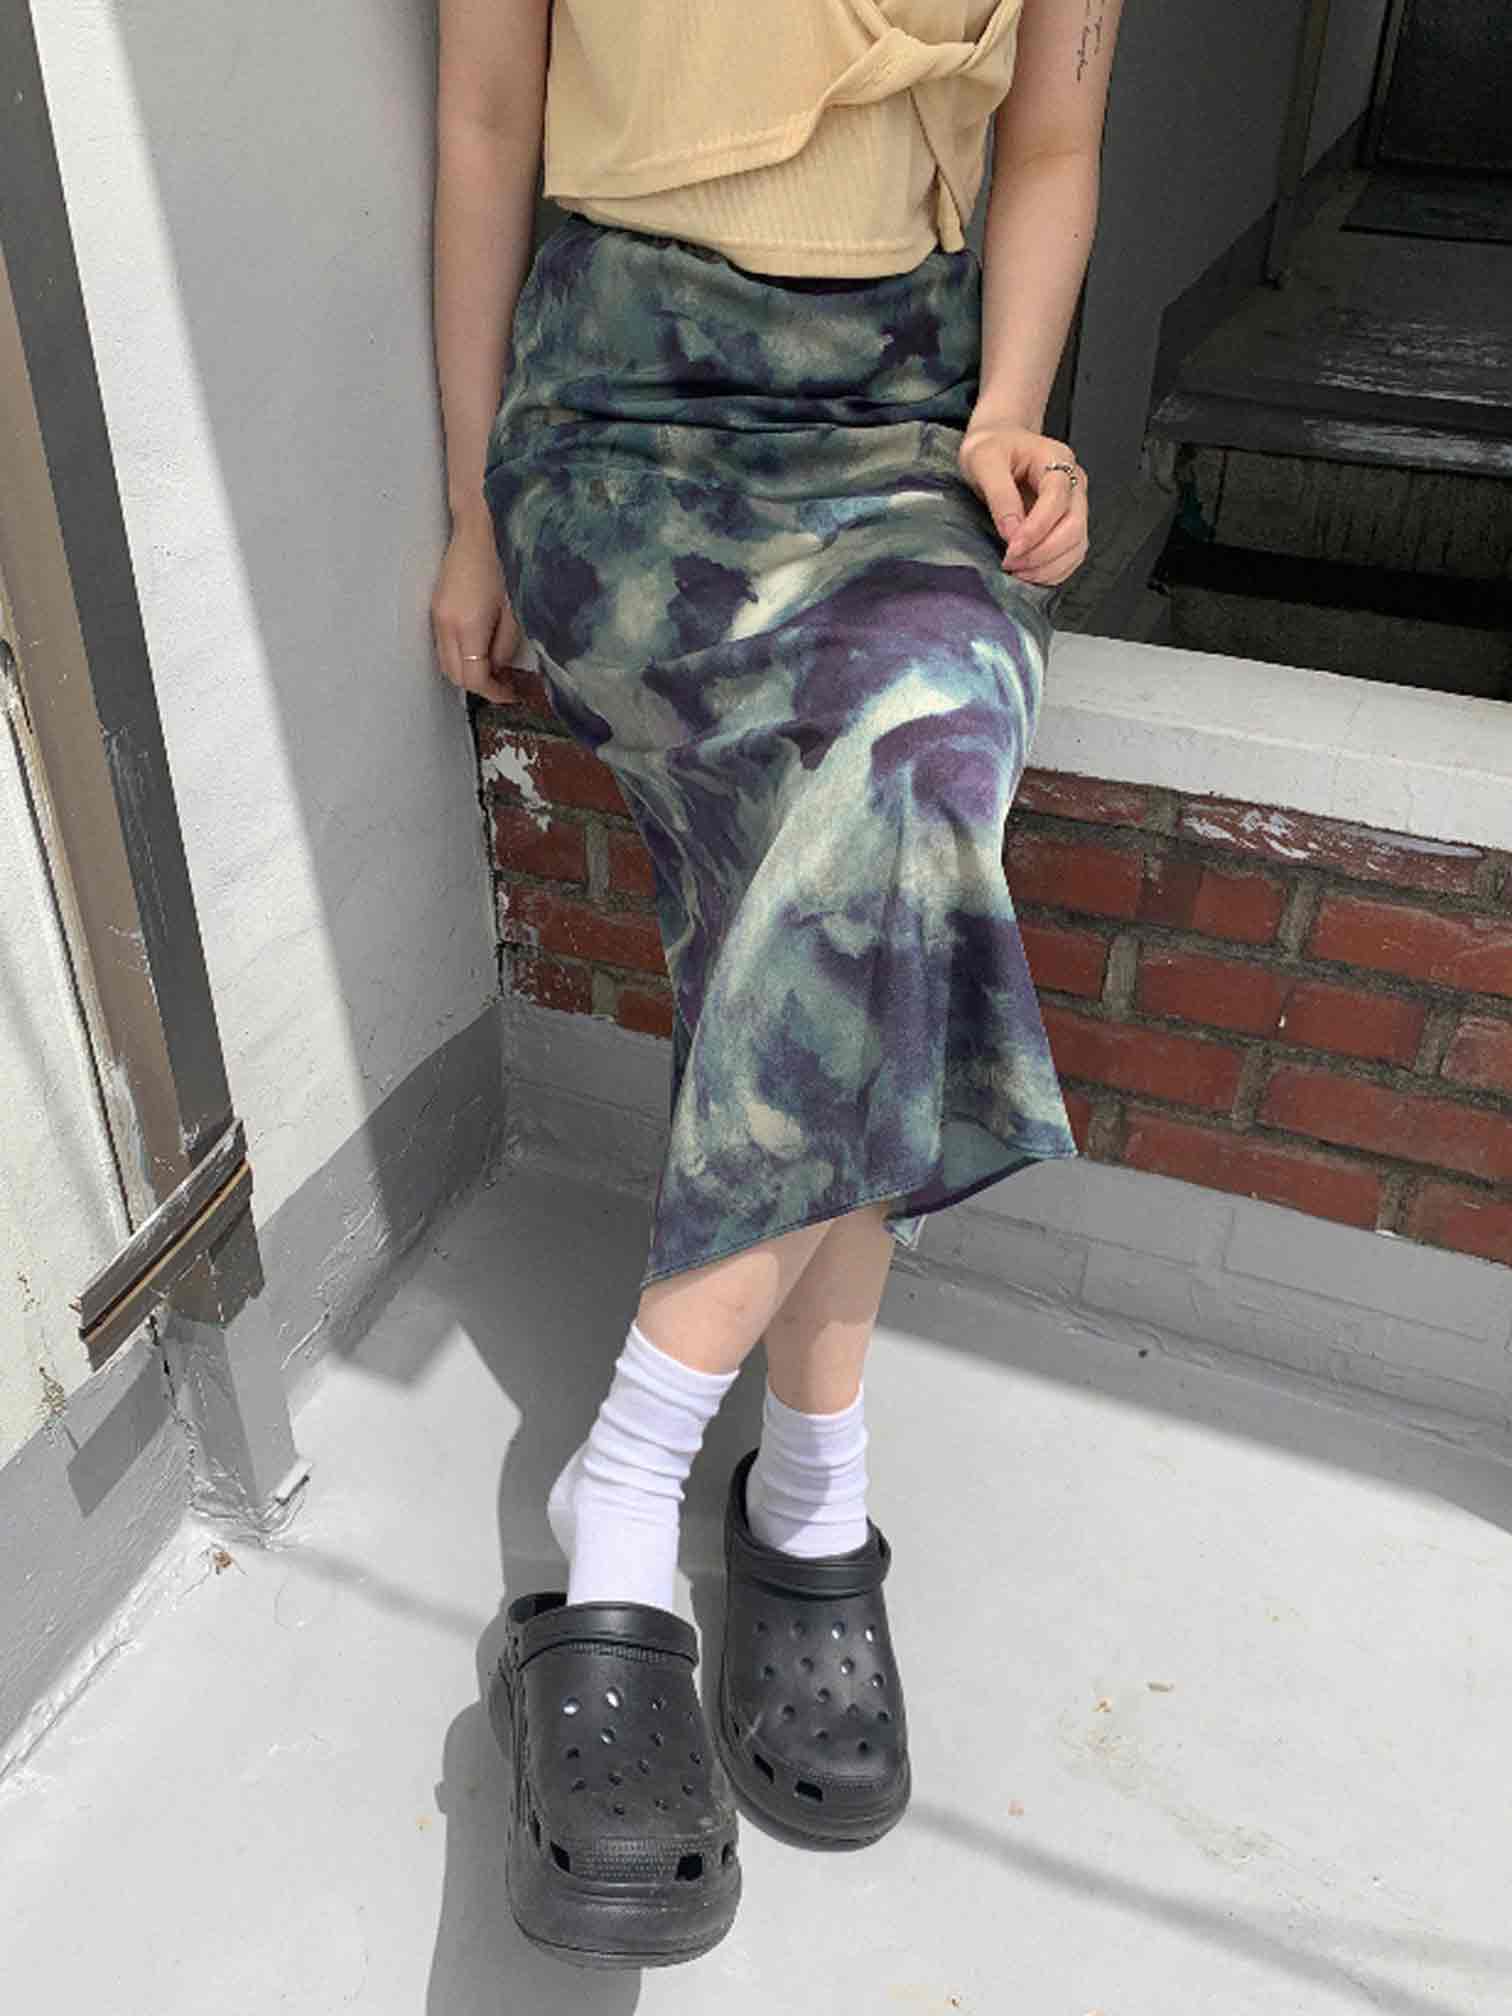 [9hope] fantastic skirt